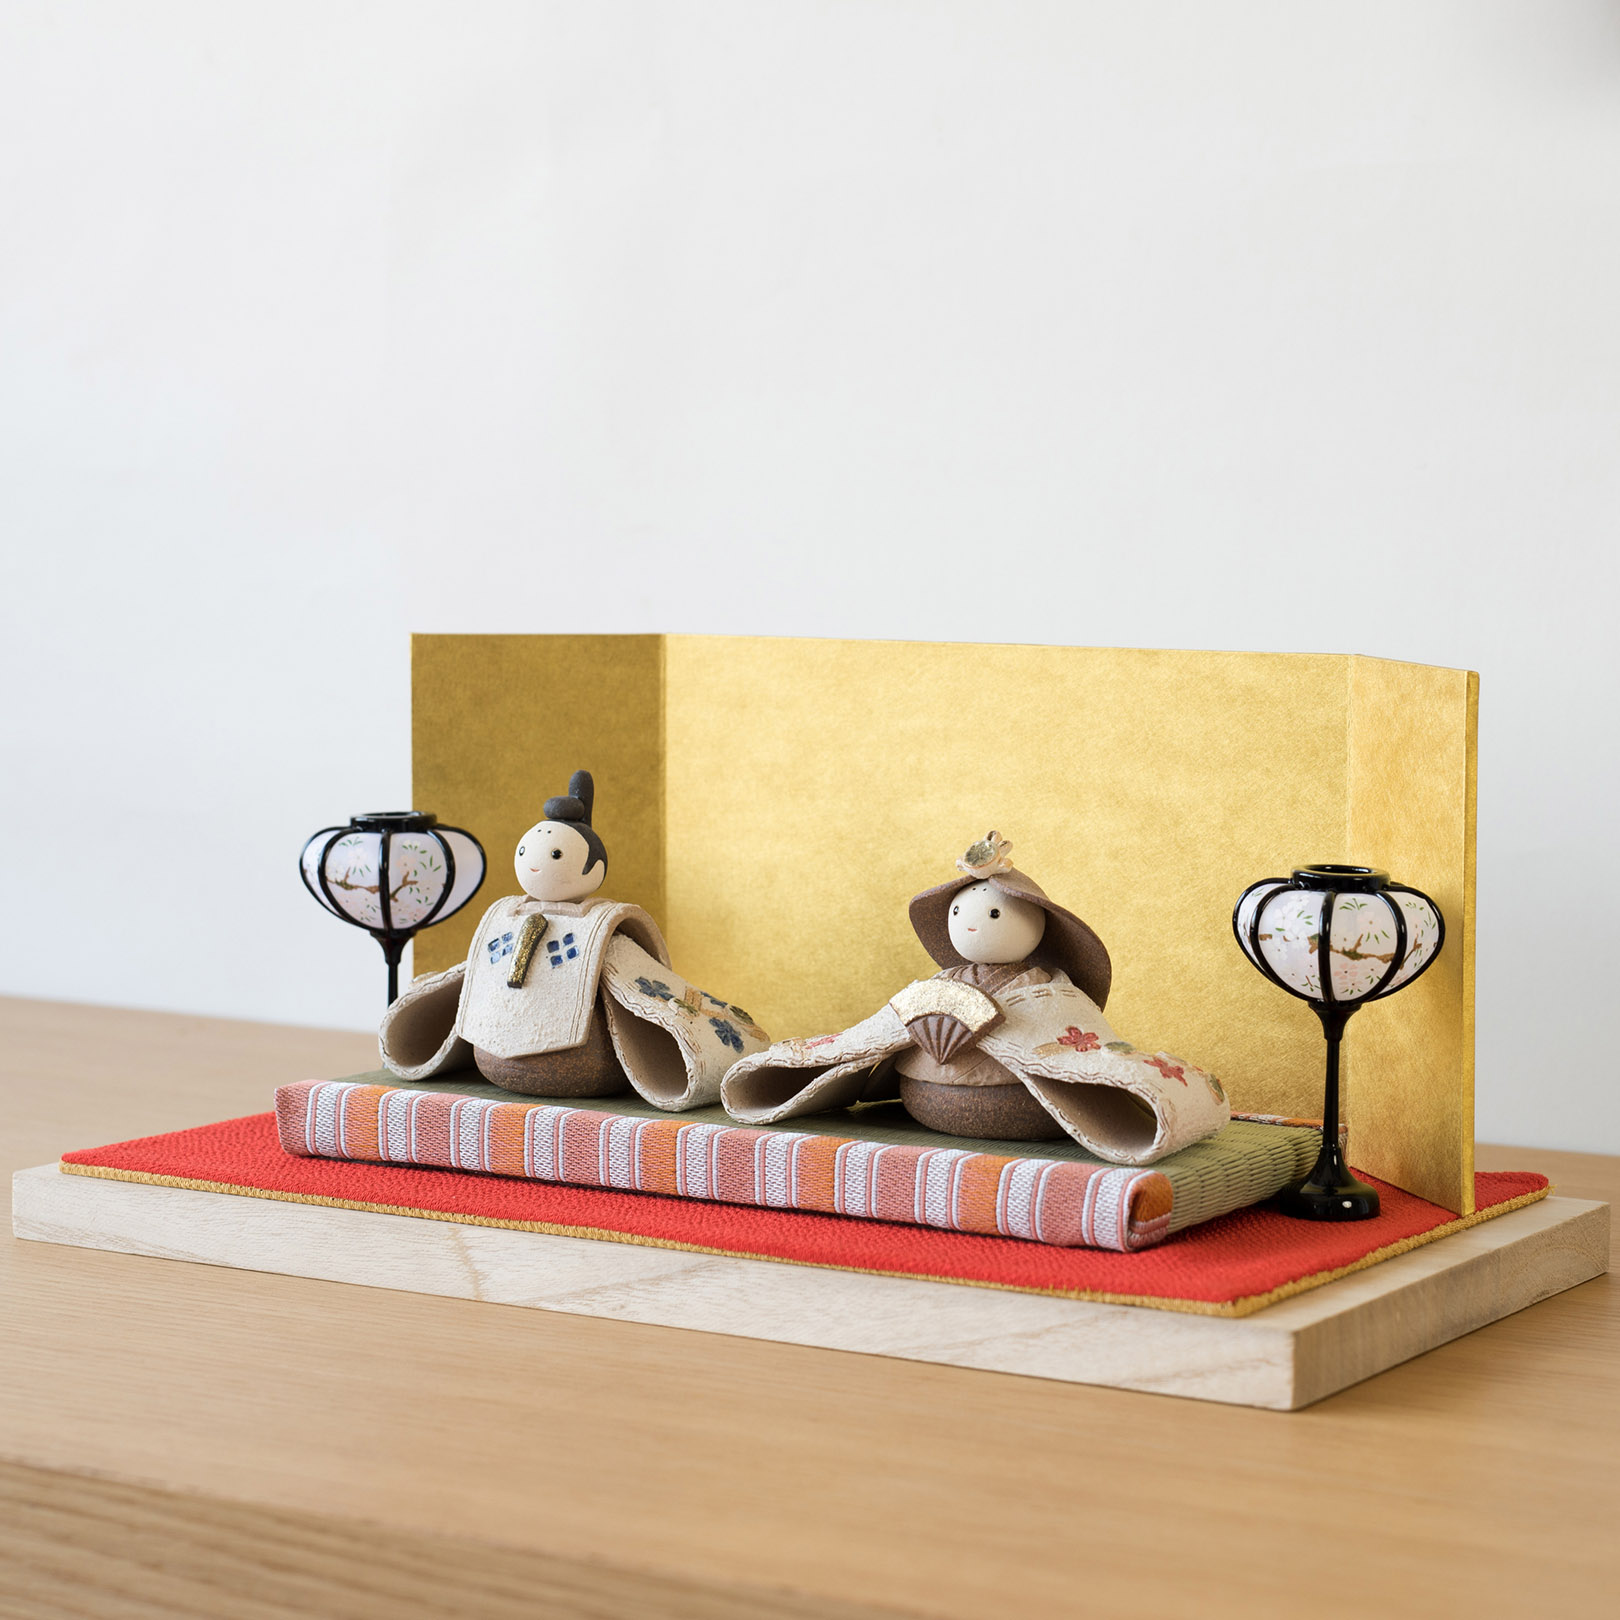 信楽焼の陶器の雛人形を飾っている画像